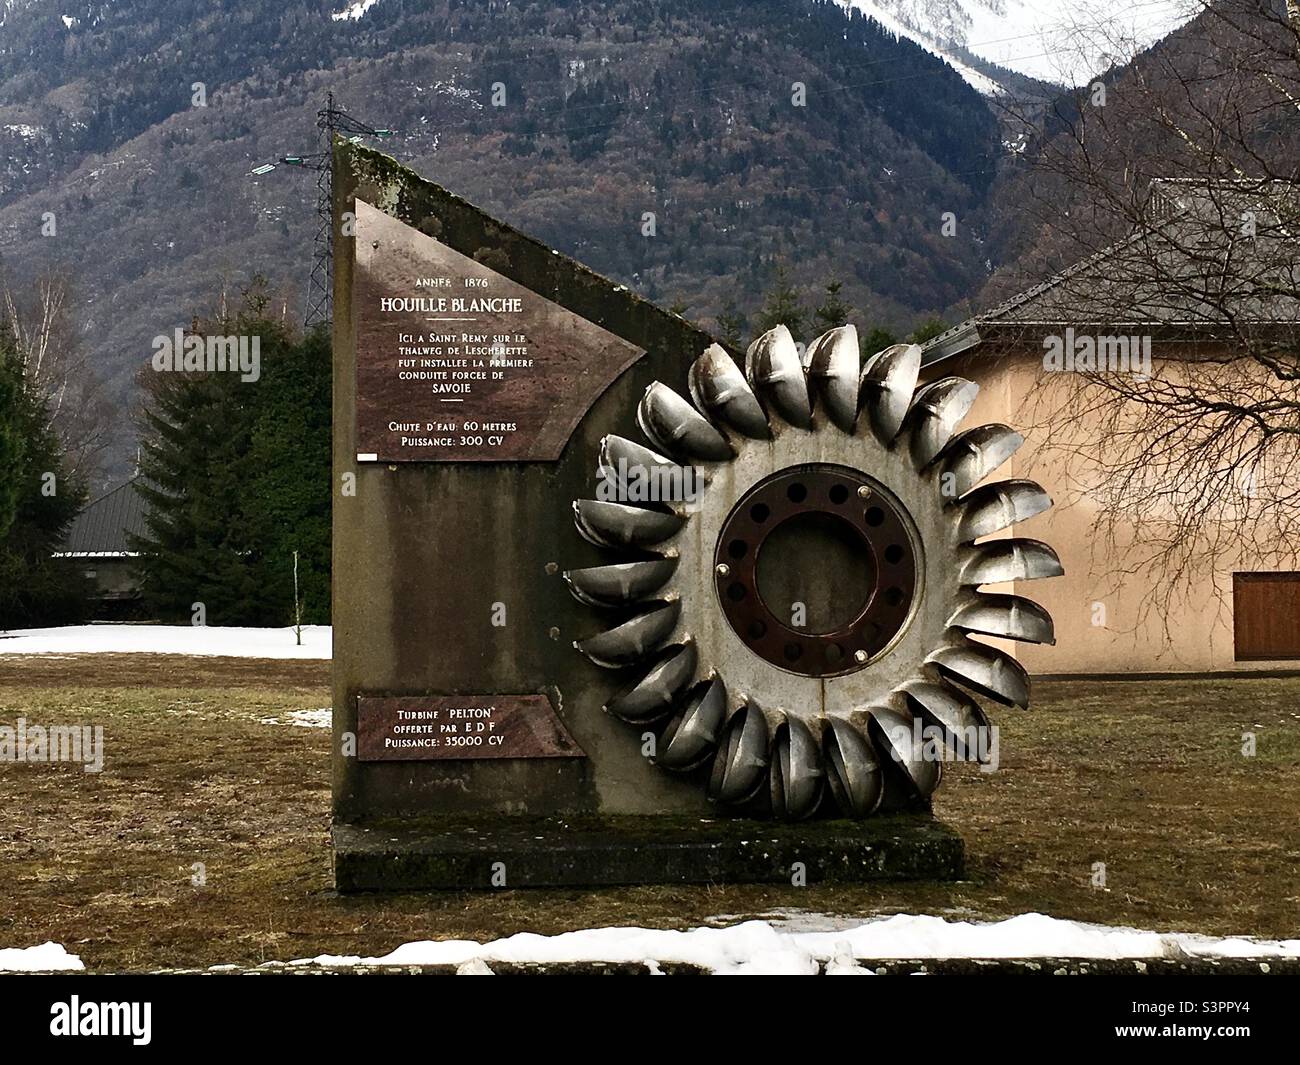 Turbina Pelton offerte par EDF année 1876 puissance 35000 CV. Houille Blanche « ici à St Rémy sur le Thalweg de Lescherette fut installée la première conduite forcée de Savoie. Scivolo d’eau 60m. » Foto Stock